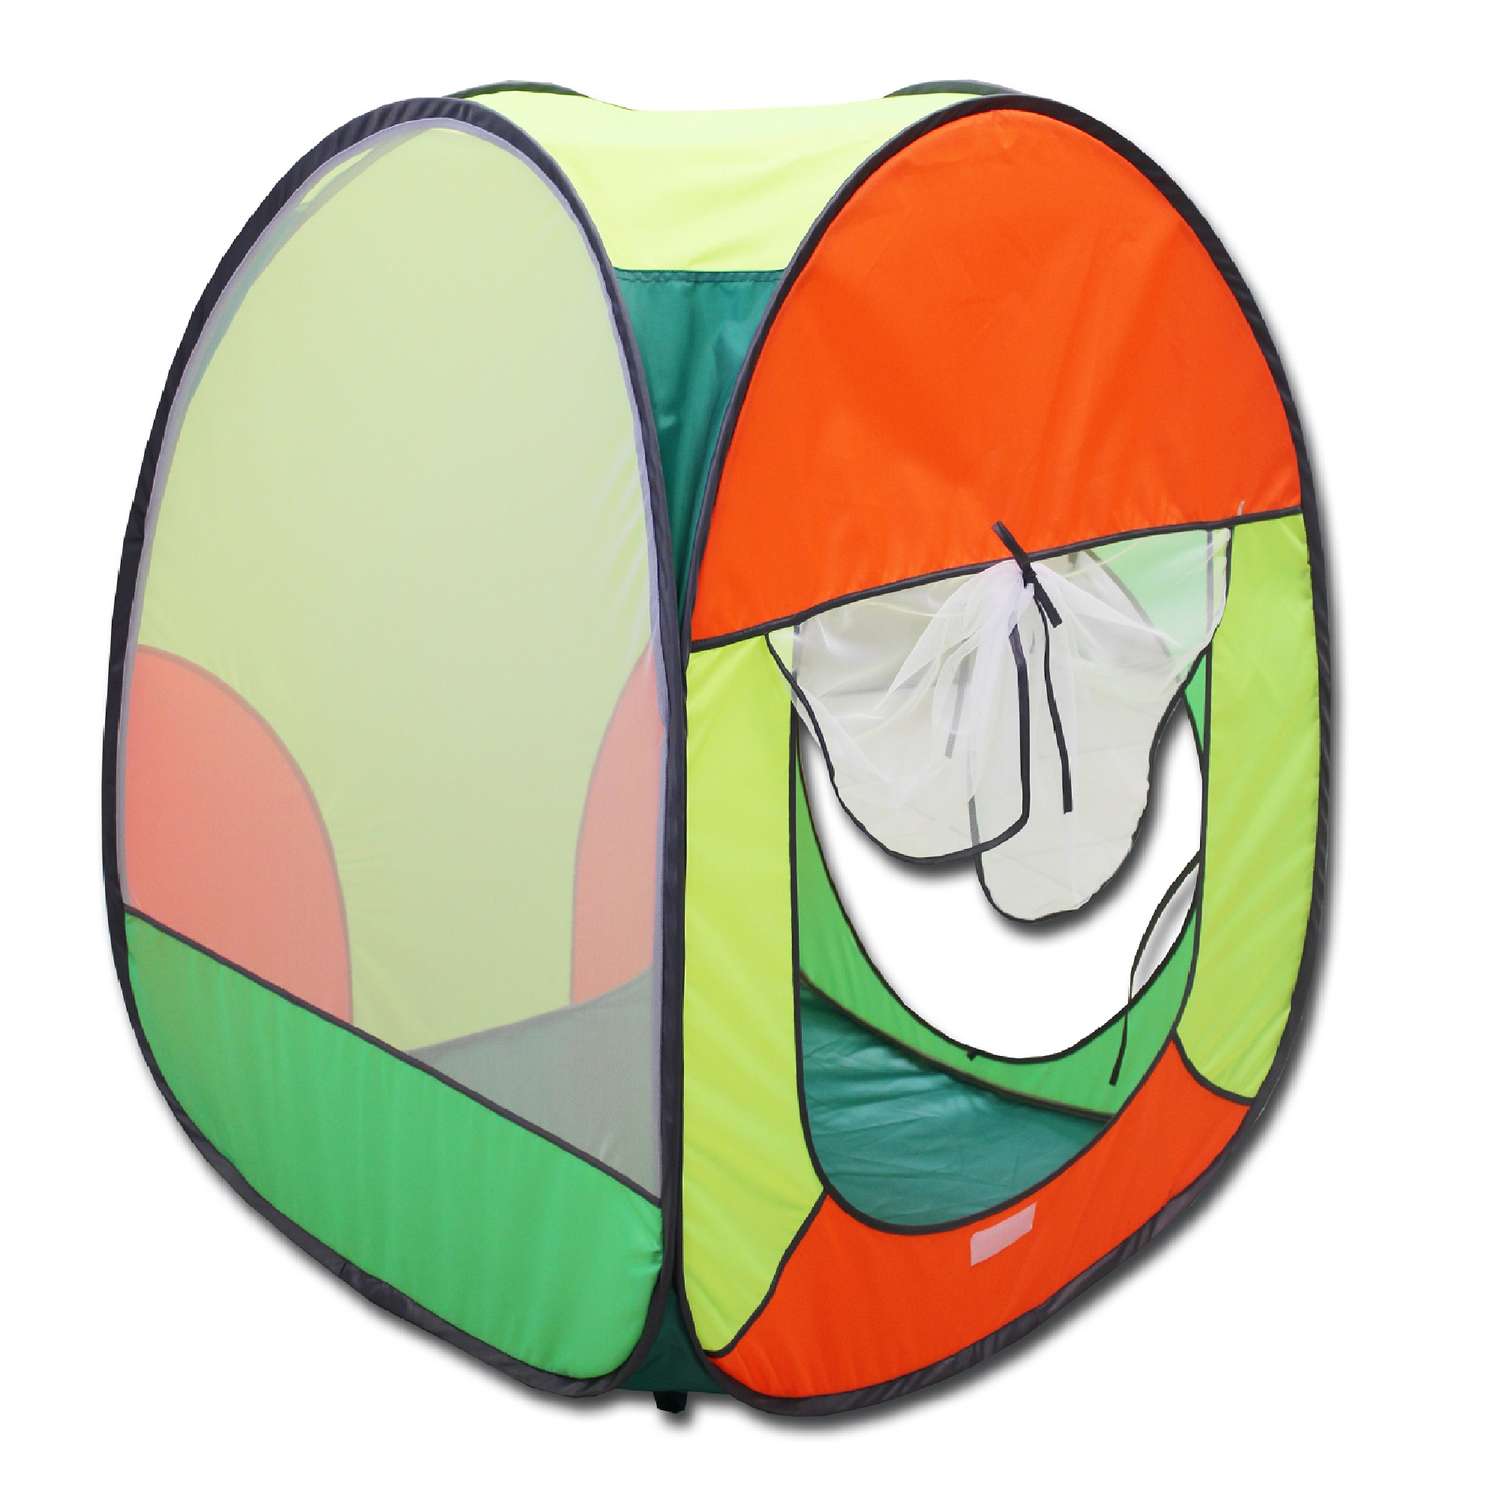 Палатка игровая Belon familia Волшебный домик цвет зеленый/оранж/лимон/салатовый Размеры 75х75х90 см - фото 1